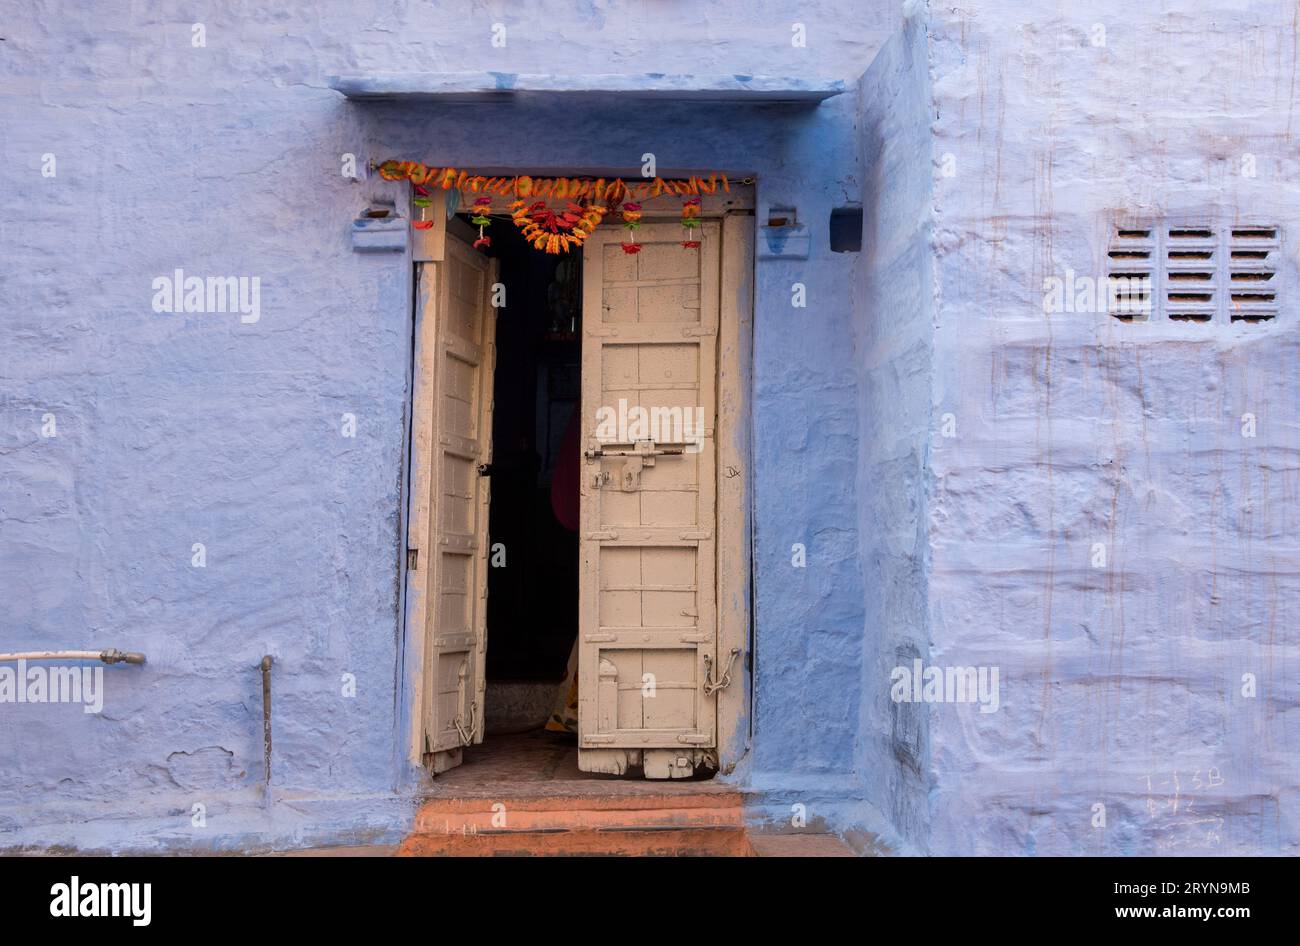 Façade d'une cour intérieure traditionnelle bleue indienne avec porte blanche. Architecture de maison indienne Banque D'Images